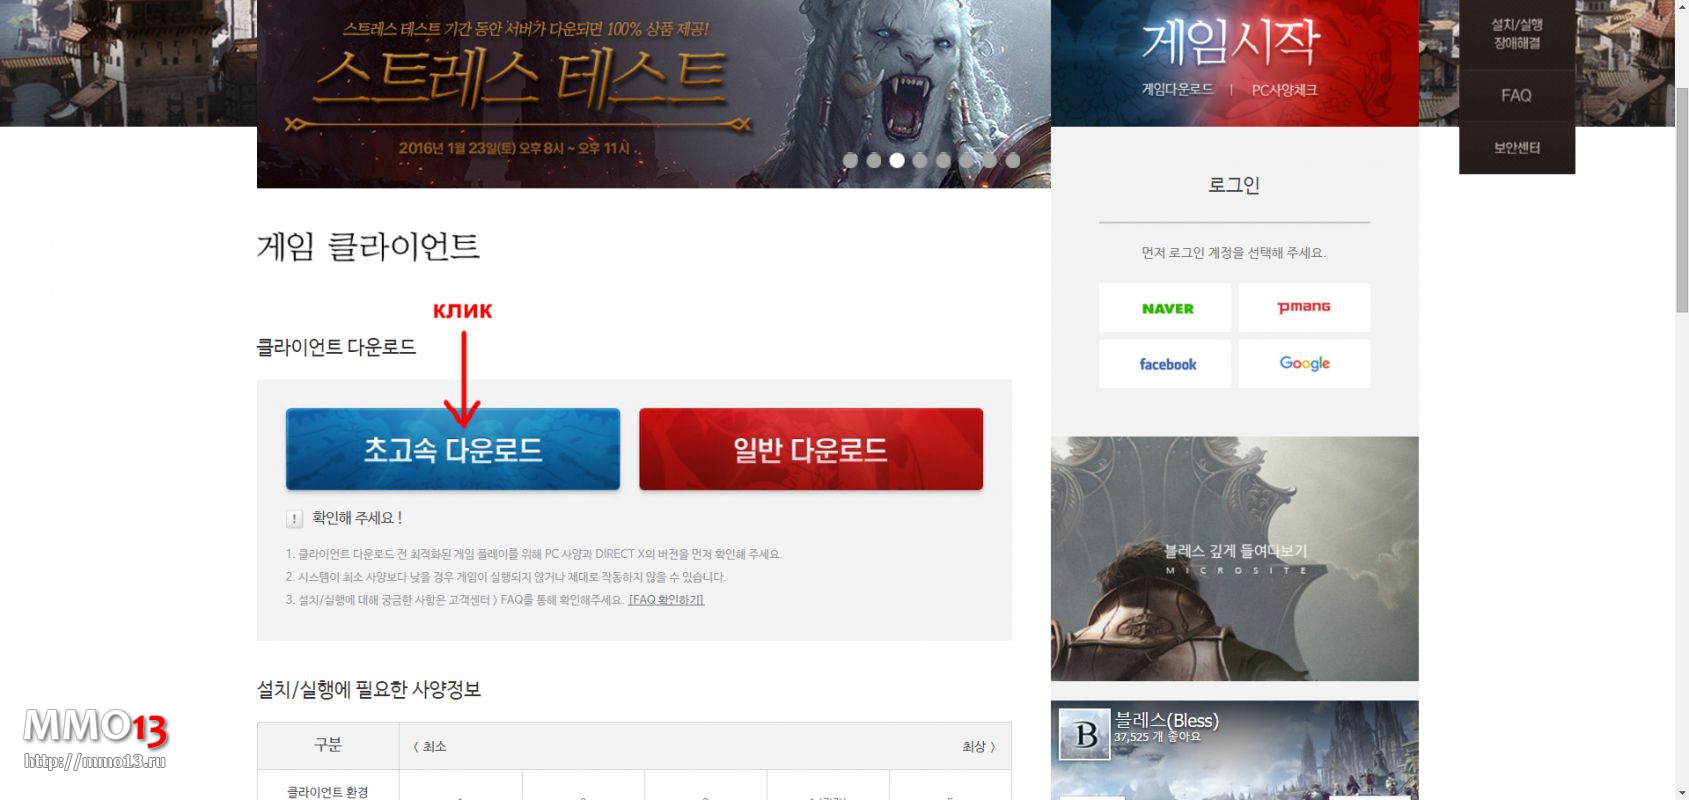 Гайд «Как начать играть в Bless Online на корейском сервере»